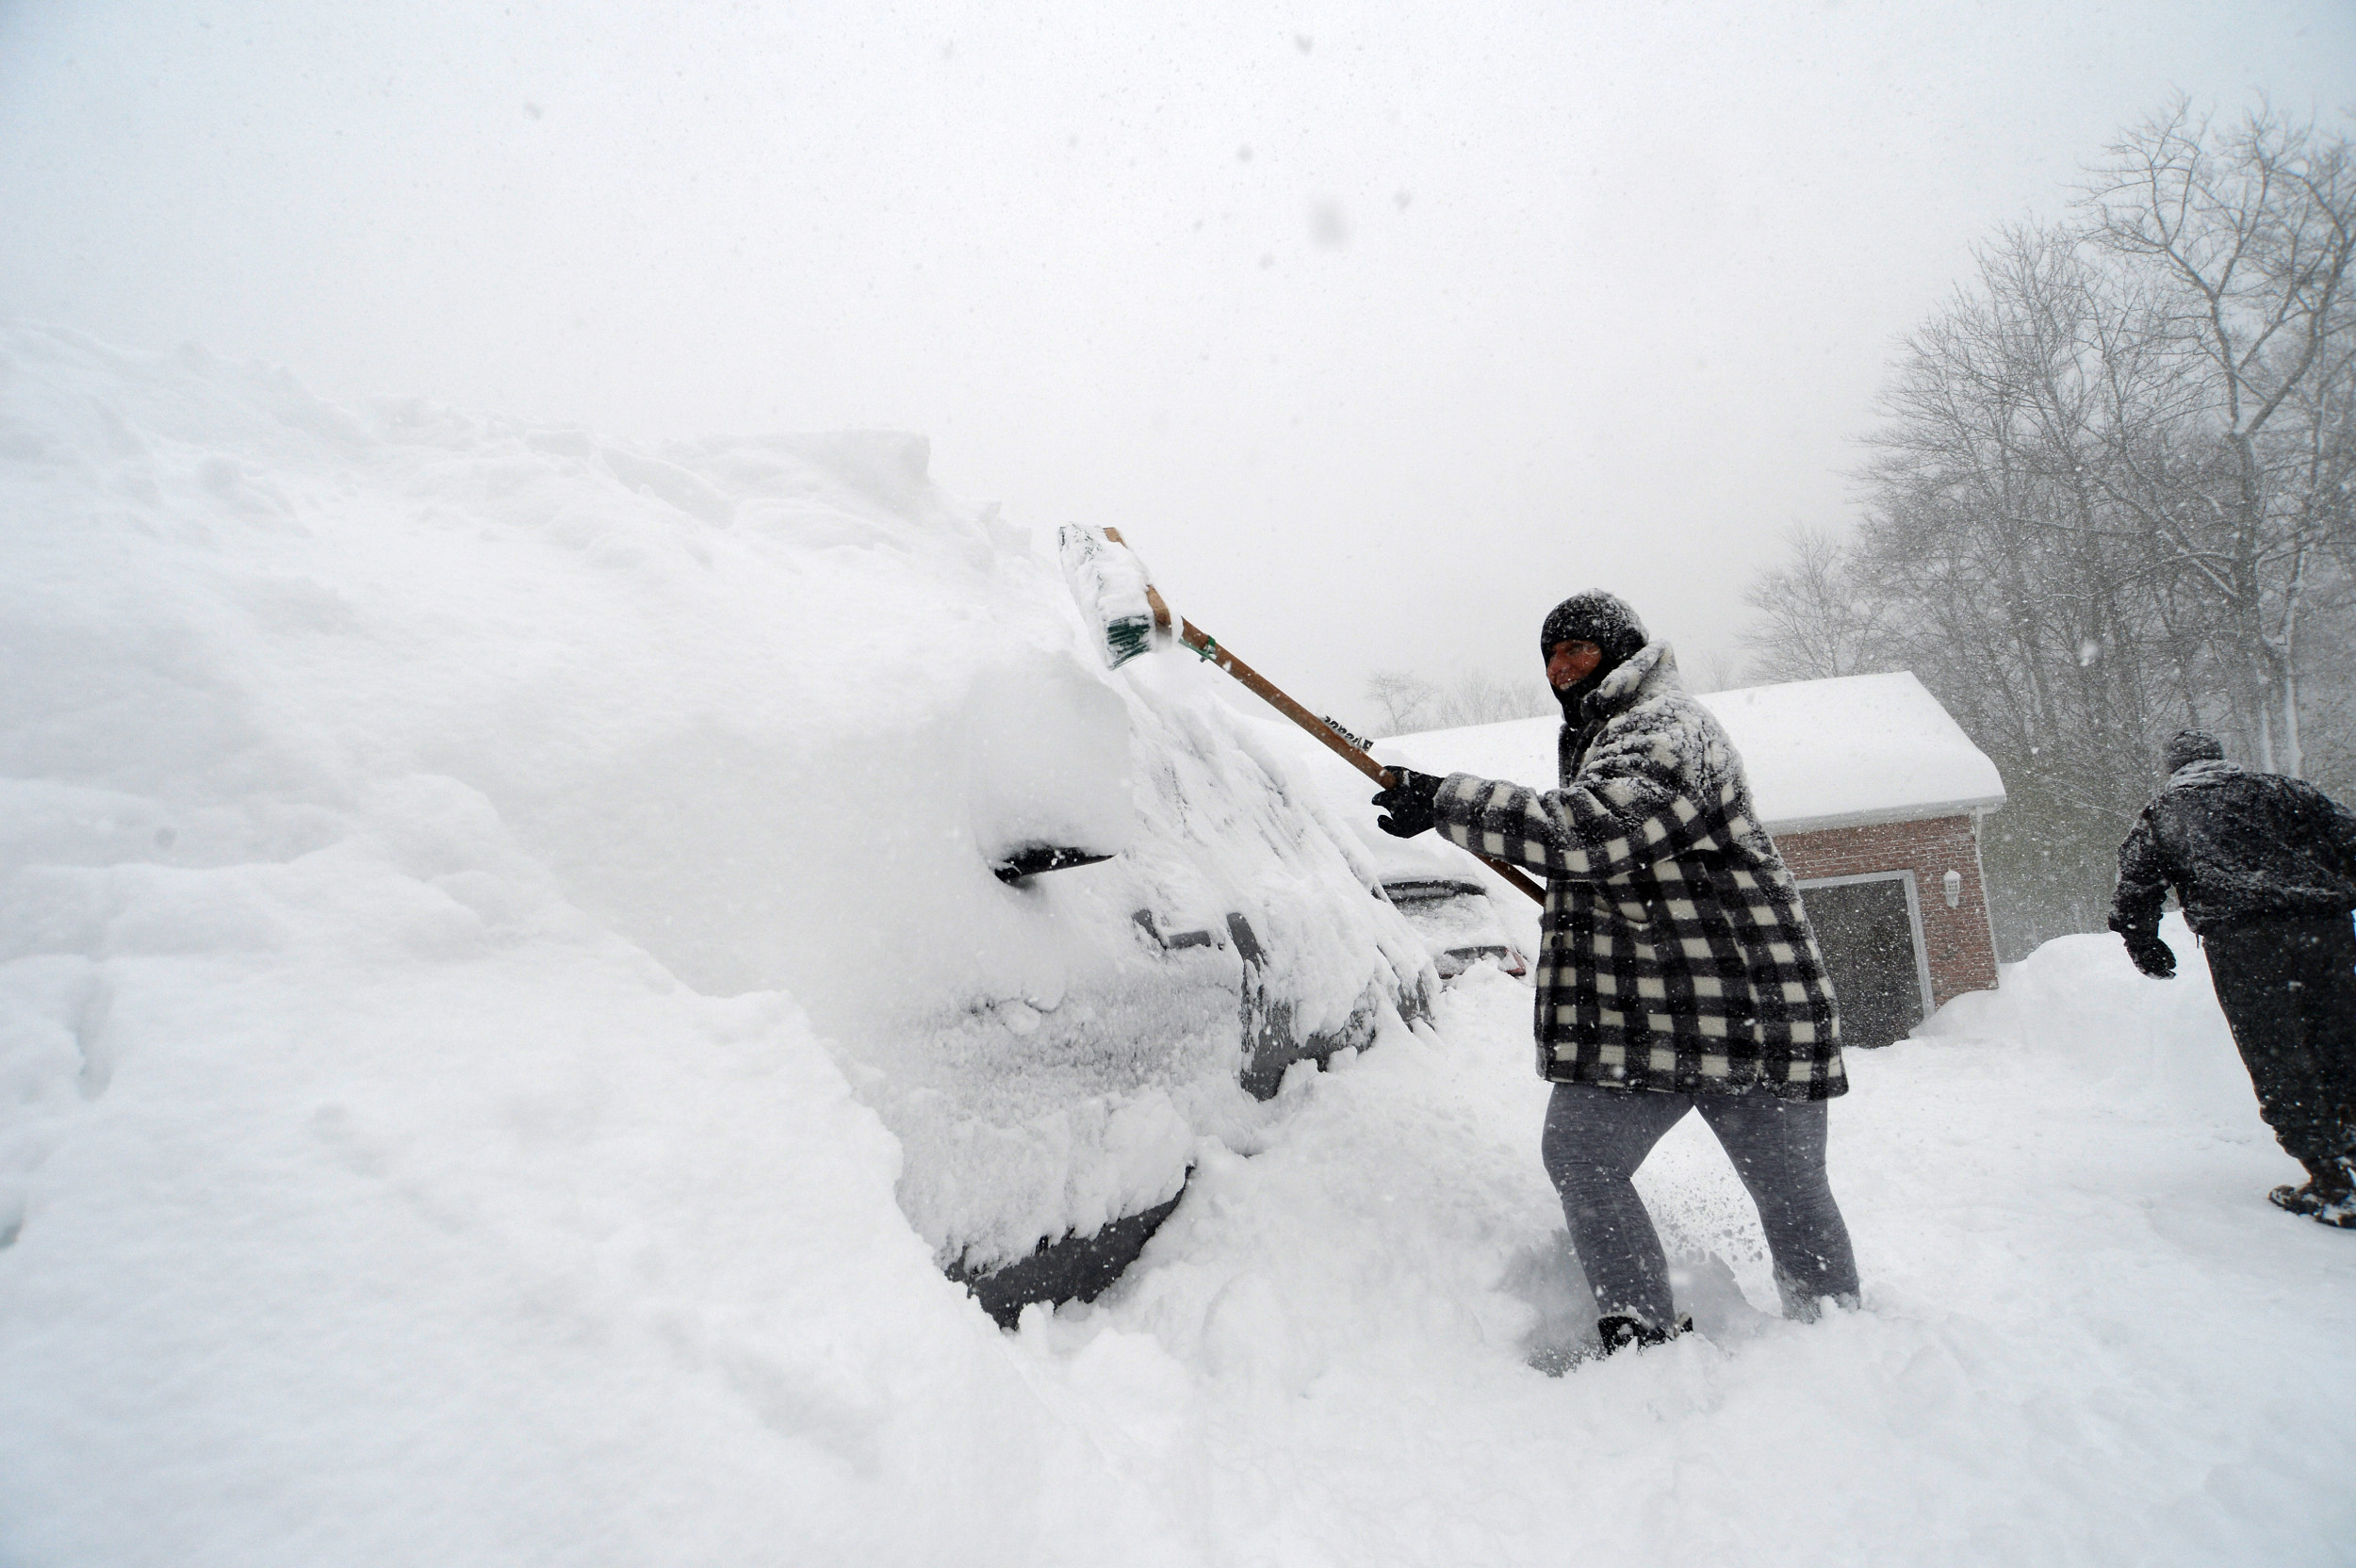 https://d.newsweek.com/en/full/2151967/woman-digs-car-out-deep-snow.jpg